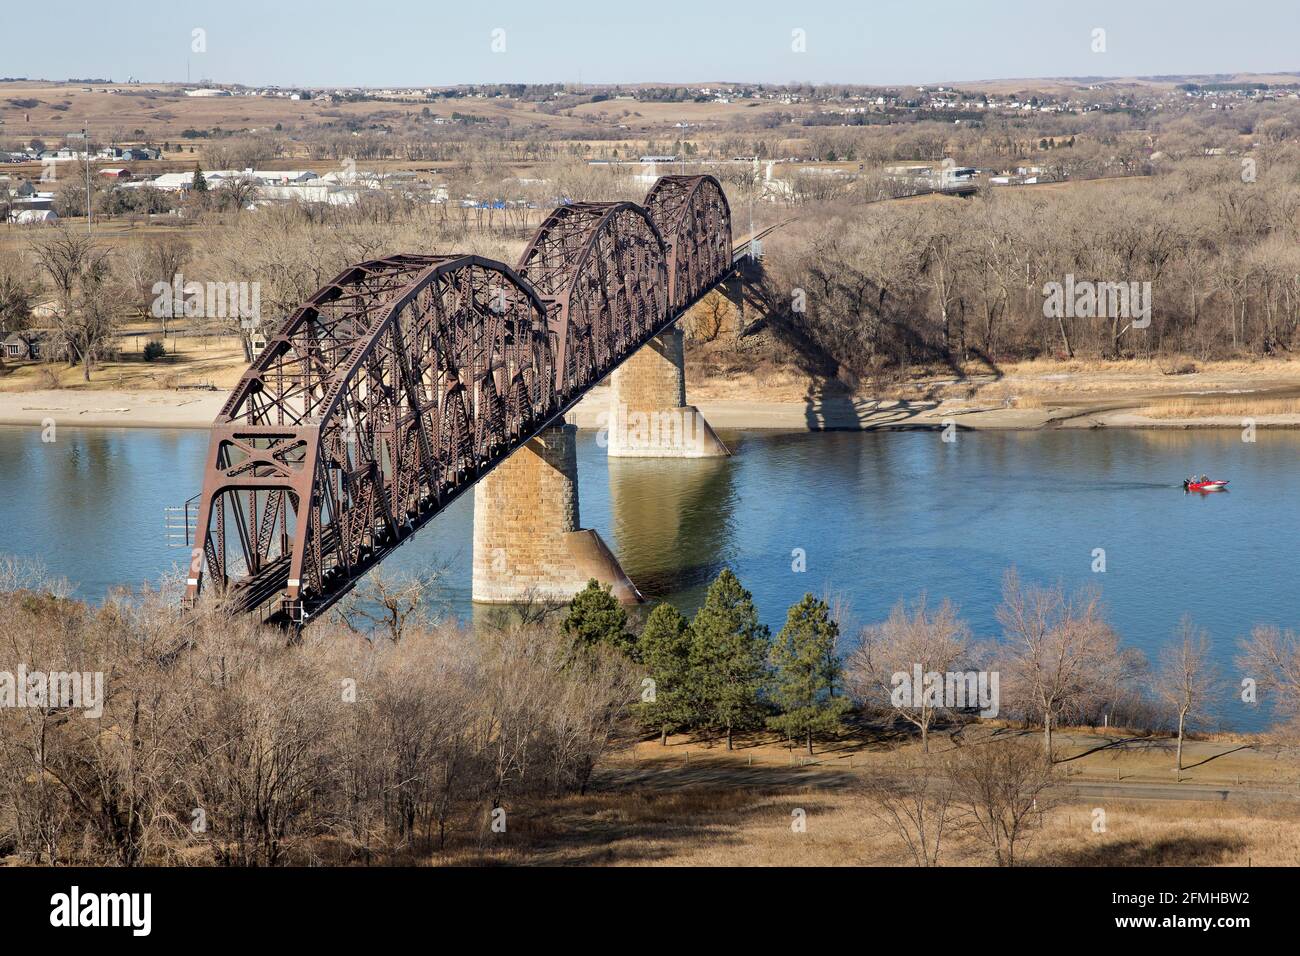 L'infrastructure historique du pont ferroviaire du Pacifique Nord en 1882 est maintenant le pont ferroviaire BNSF au-dessus de la rivière Missouri entre Bismarck et Mandan, dans le Dakota du Nord Banque D'Images